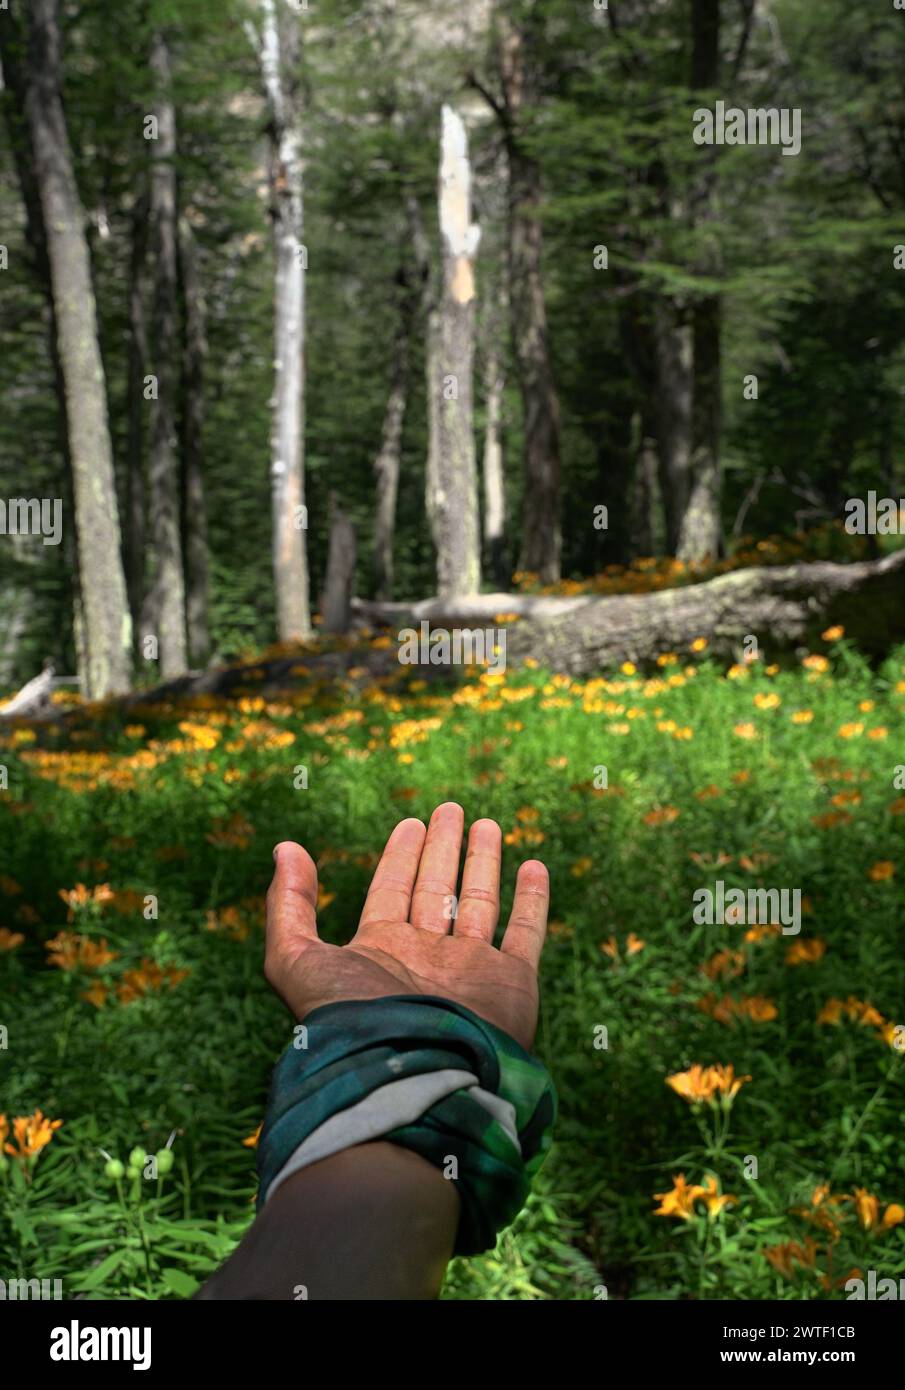 primer plano de una mano en el bosque Stock Photo